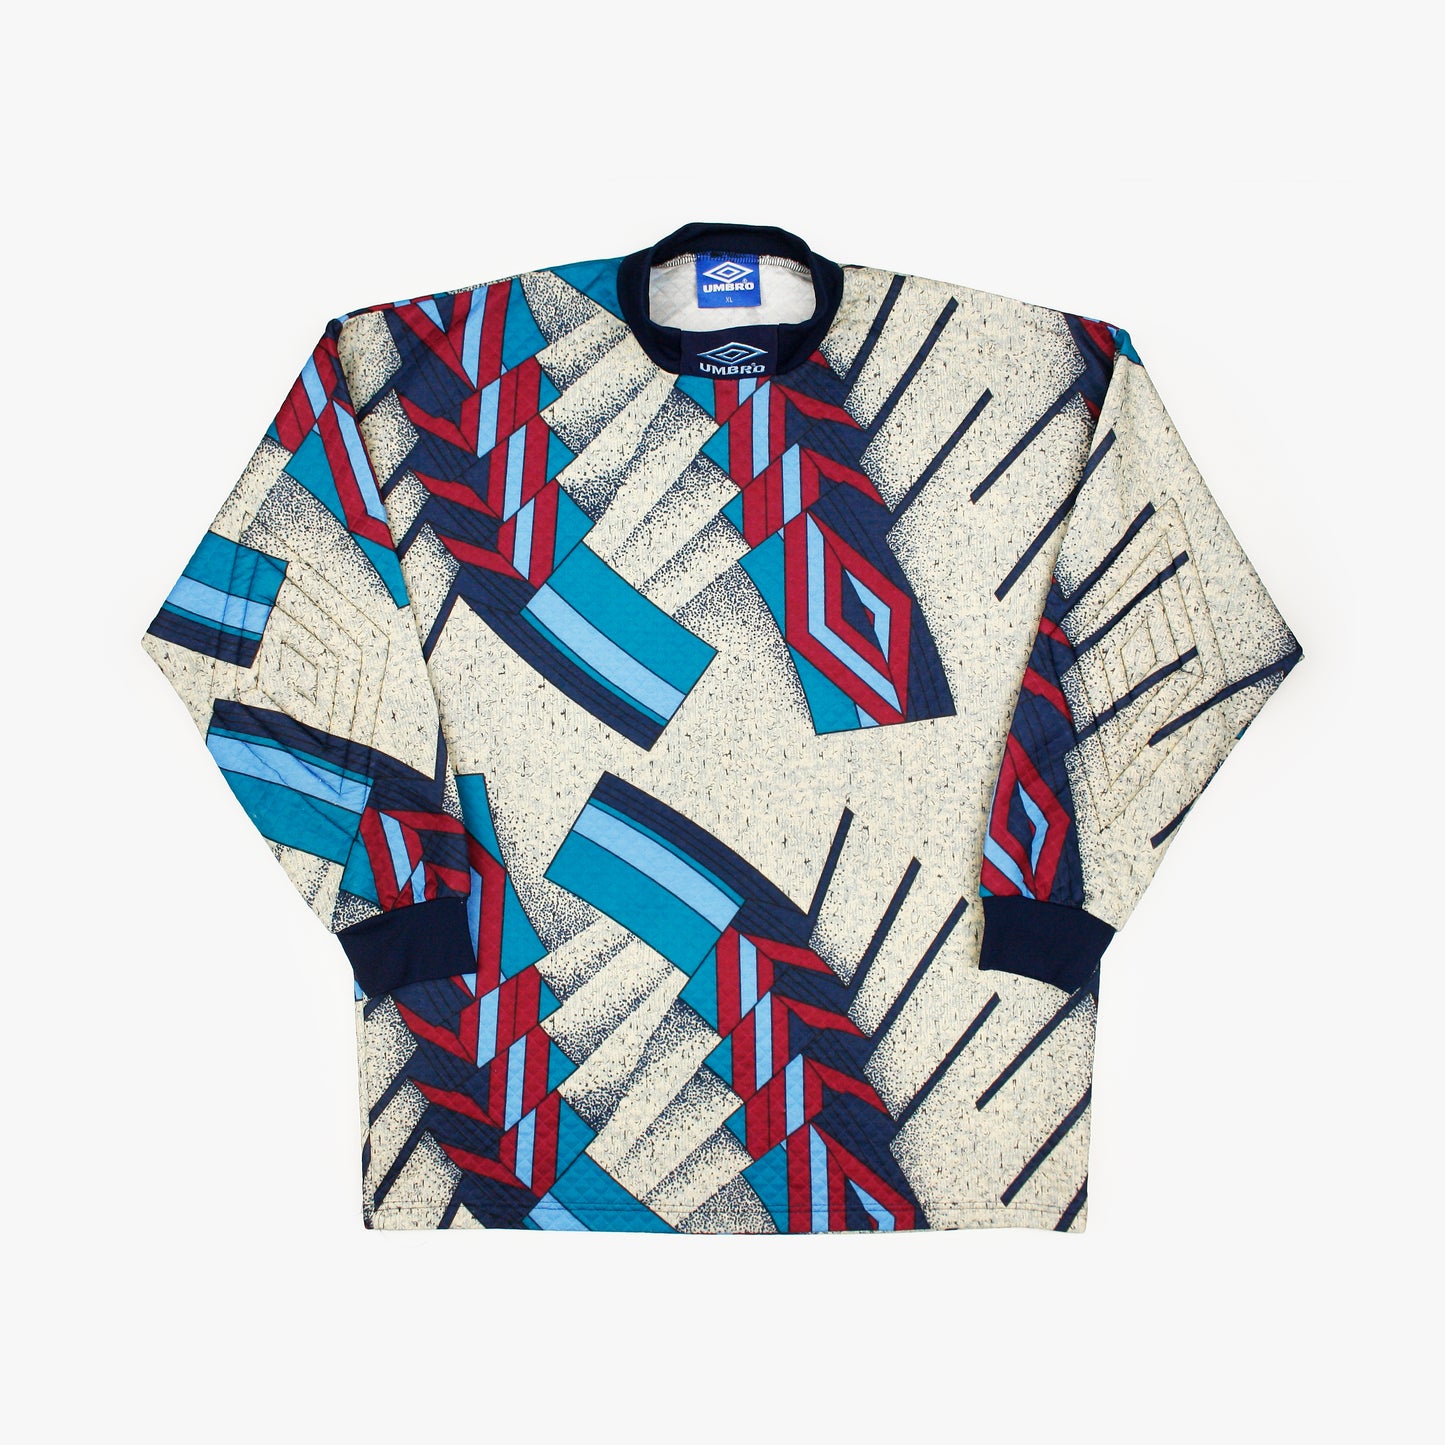 Umbro 93/94 • Goalkeeper Template Shirt • XL